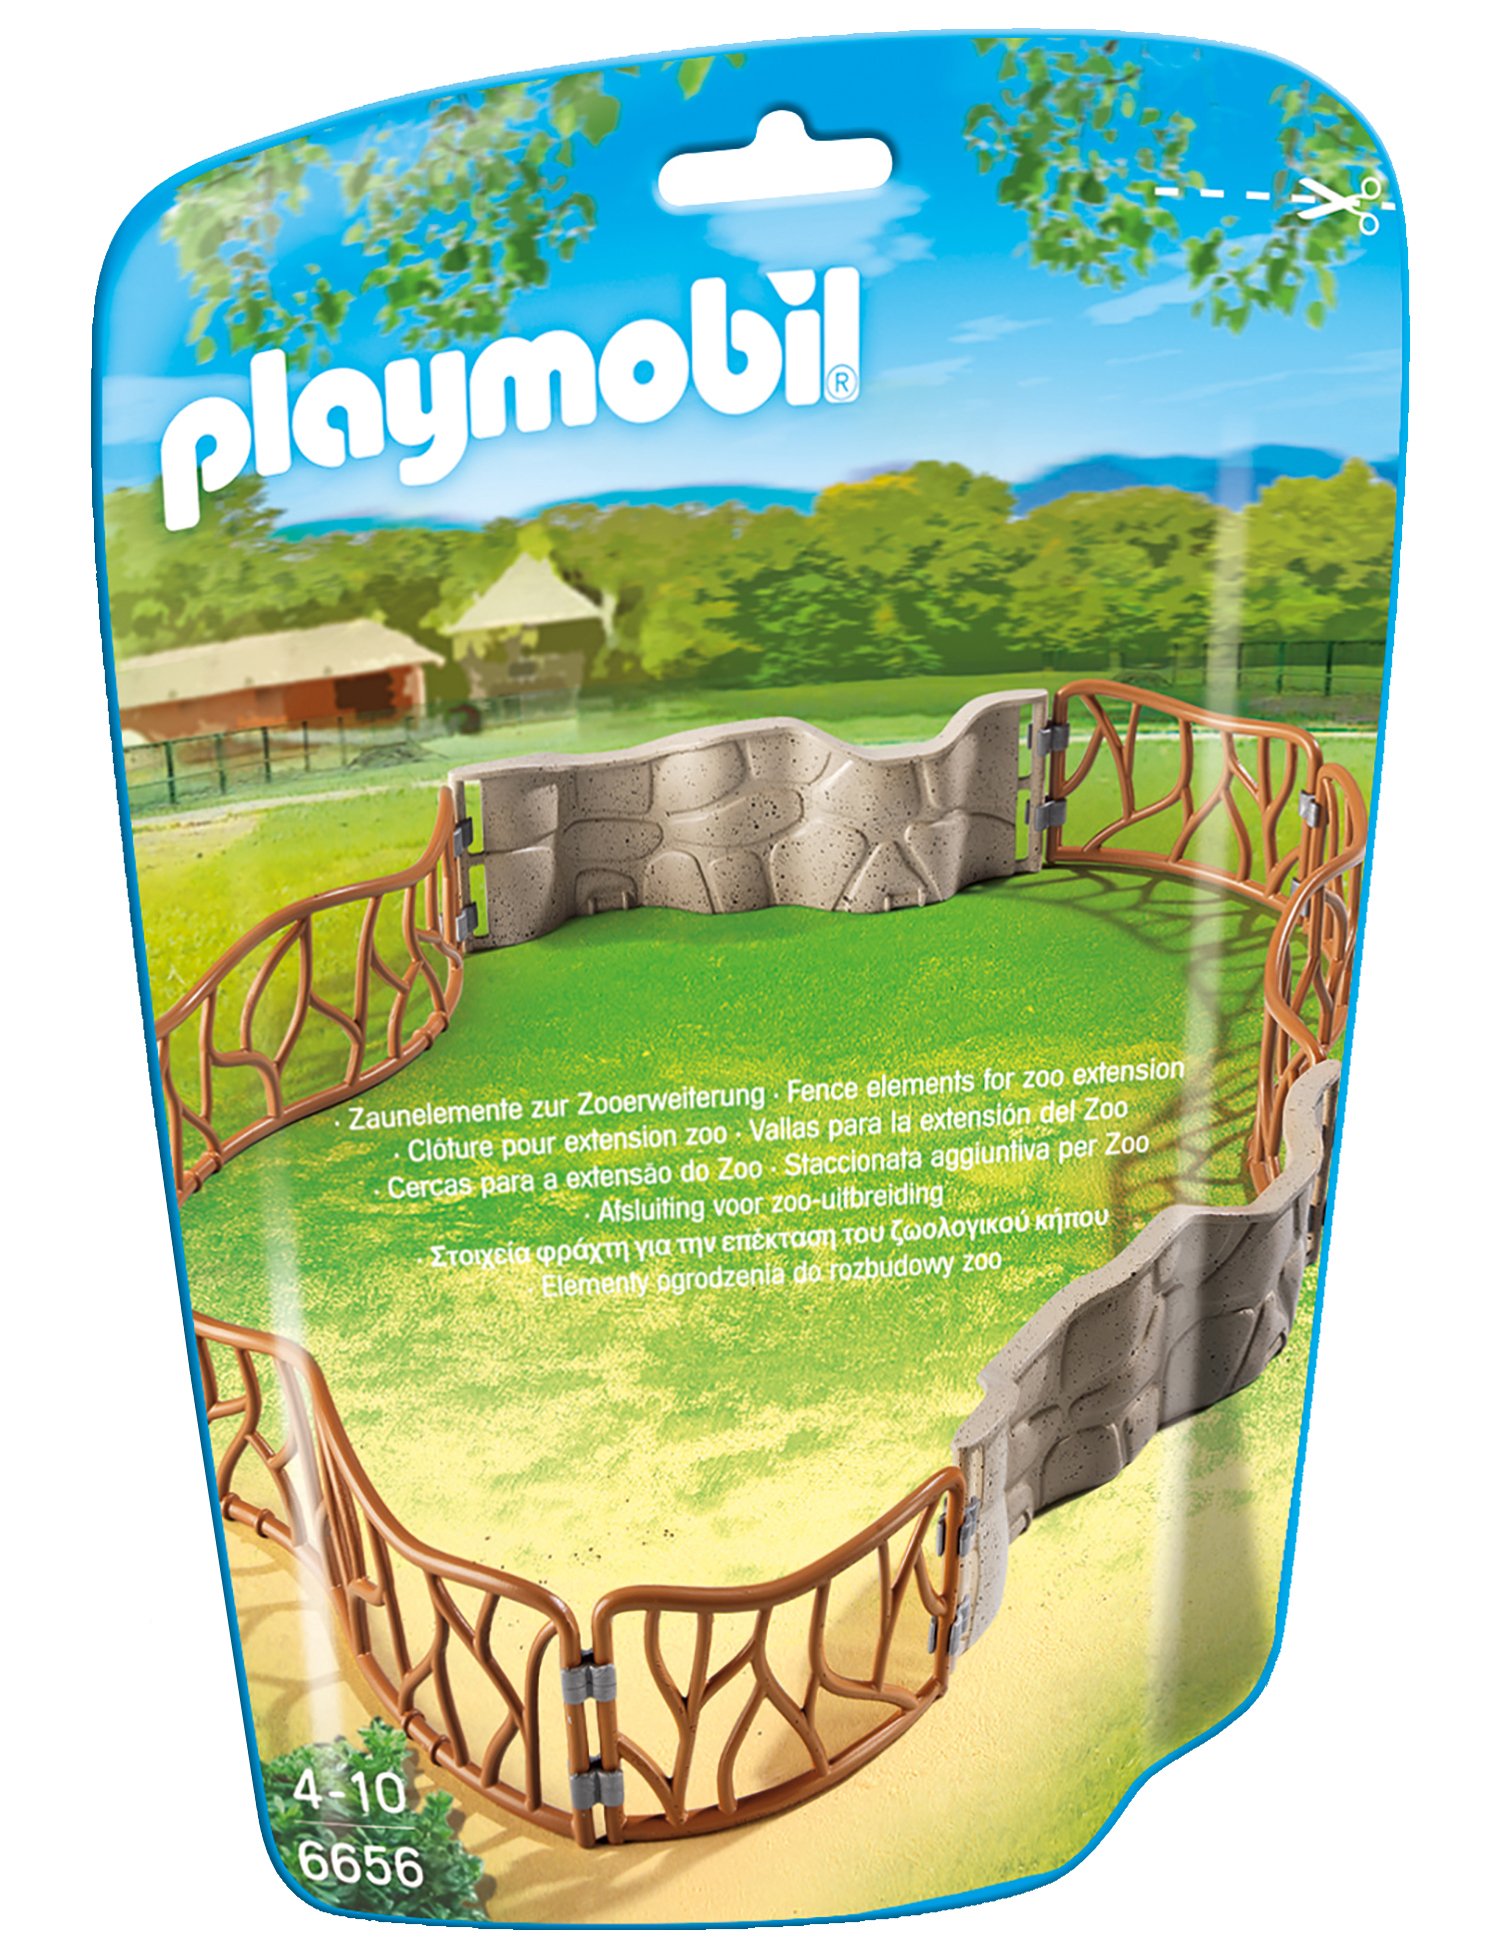 Playmobil Zoo Enclosure